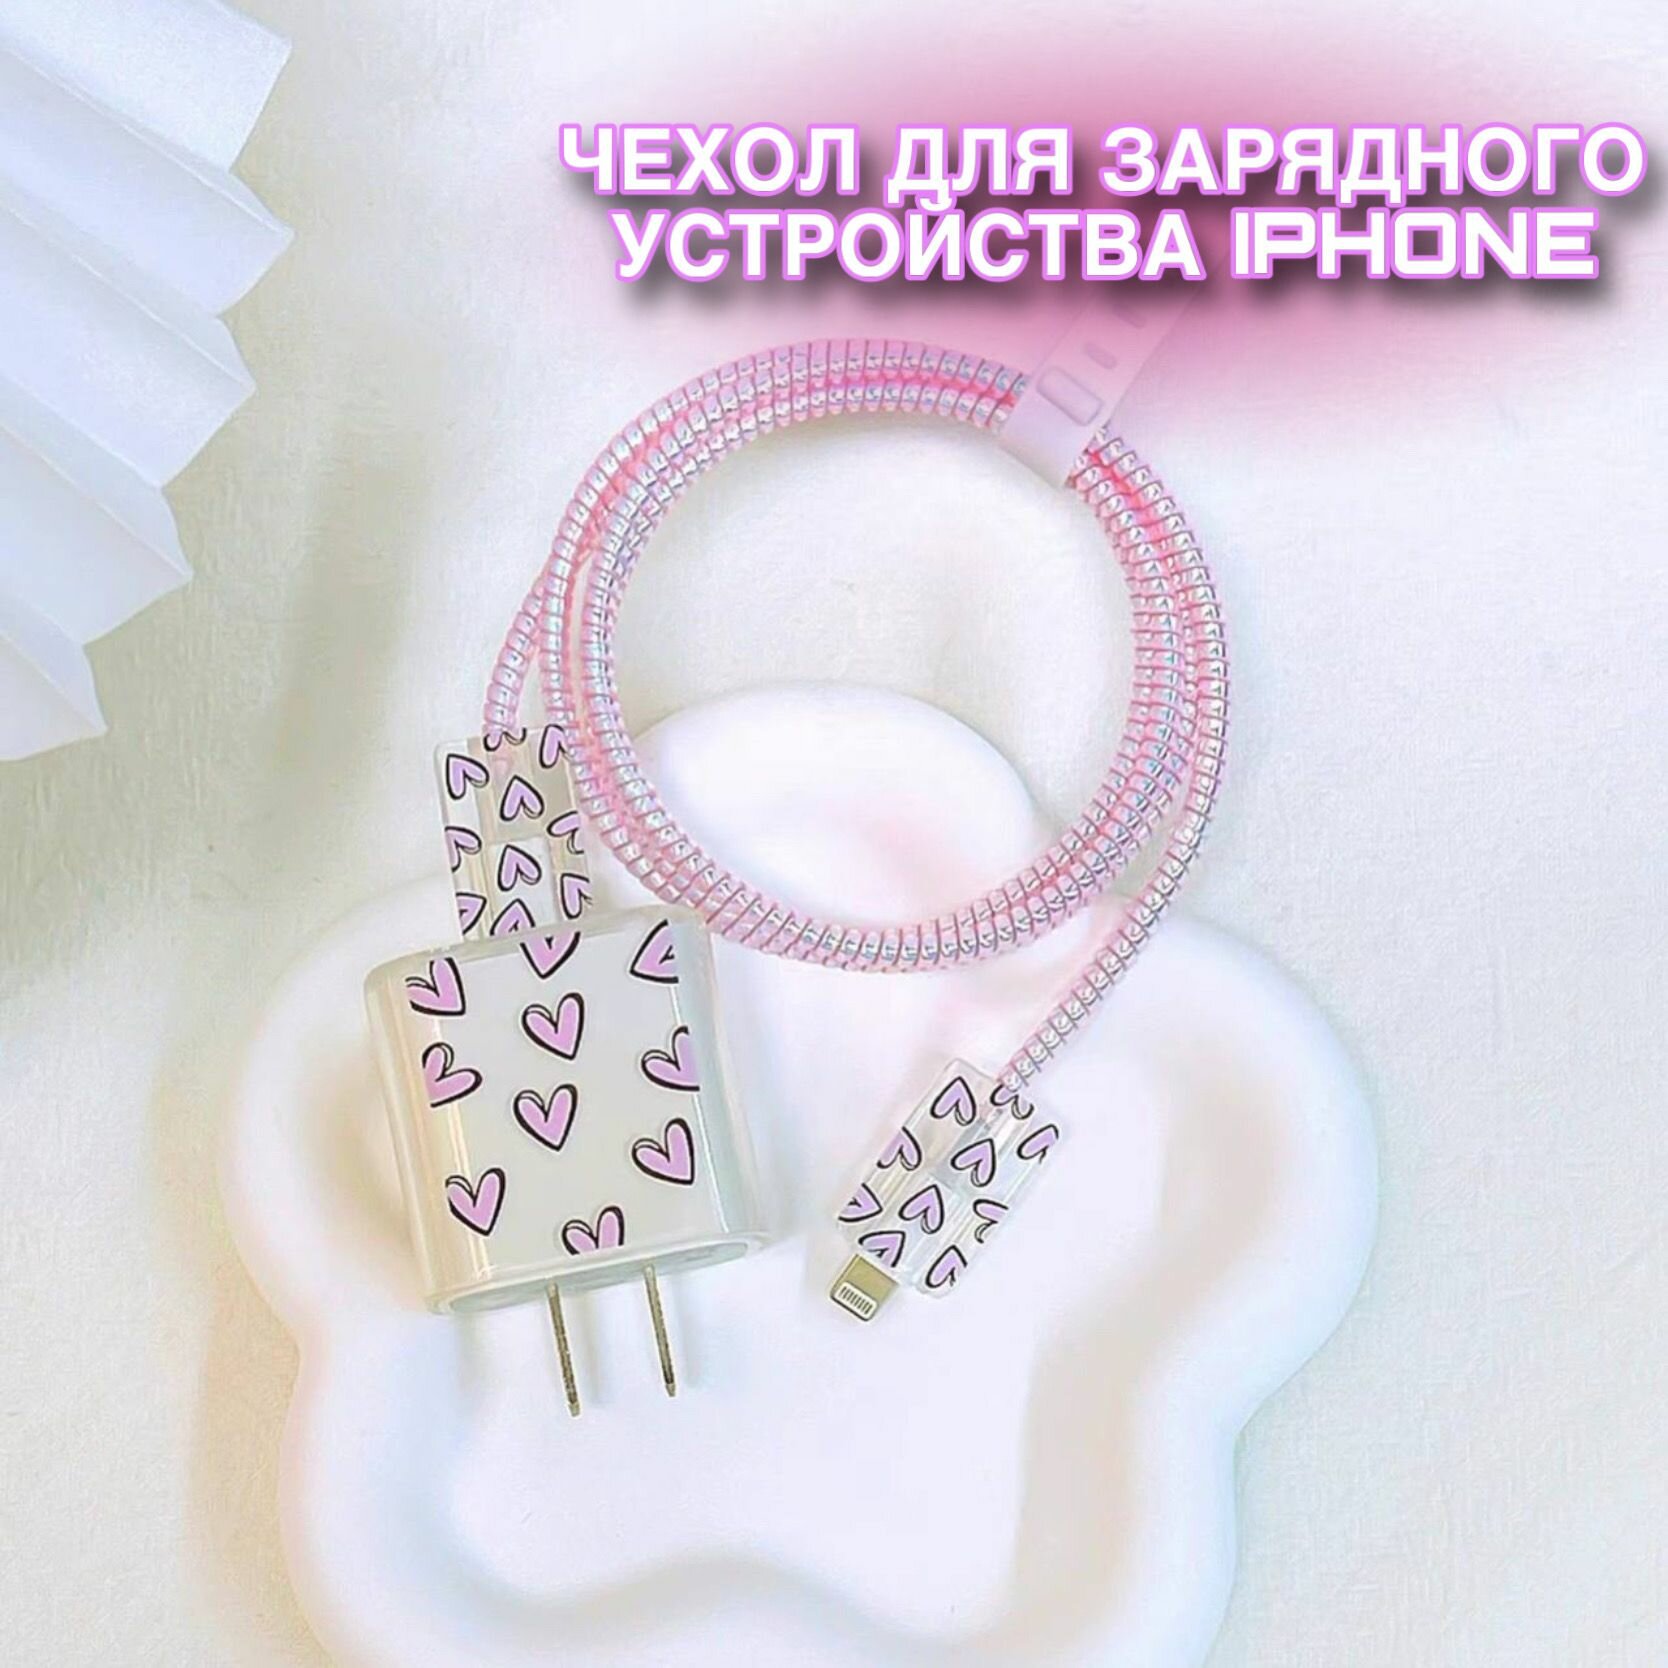 Чехол для зарядного устройства и кабеля для iPhone розовые сердца